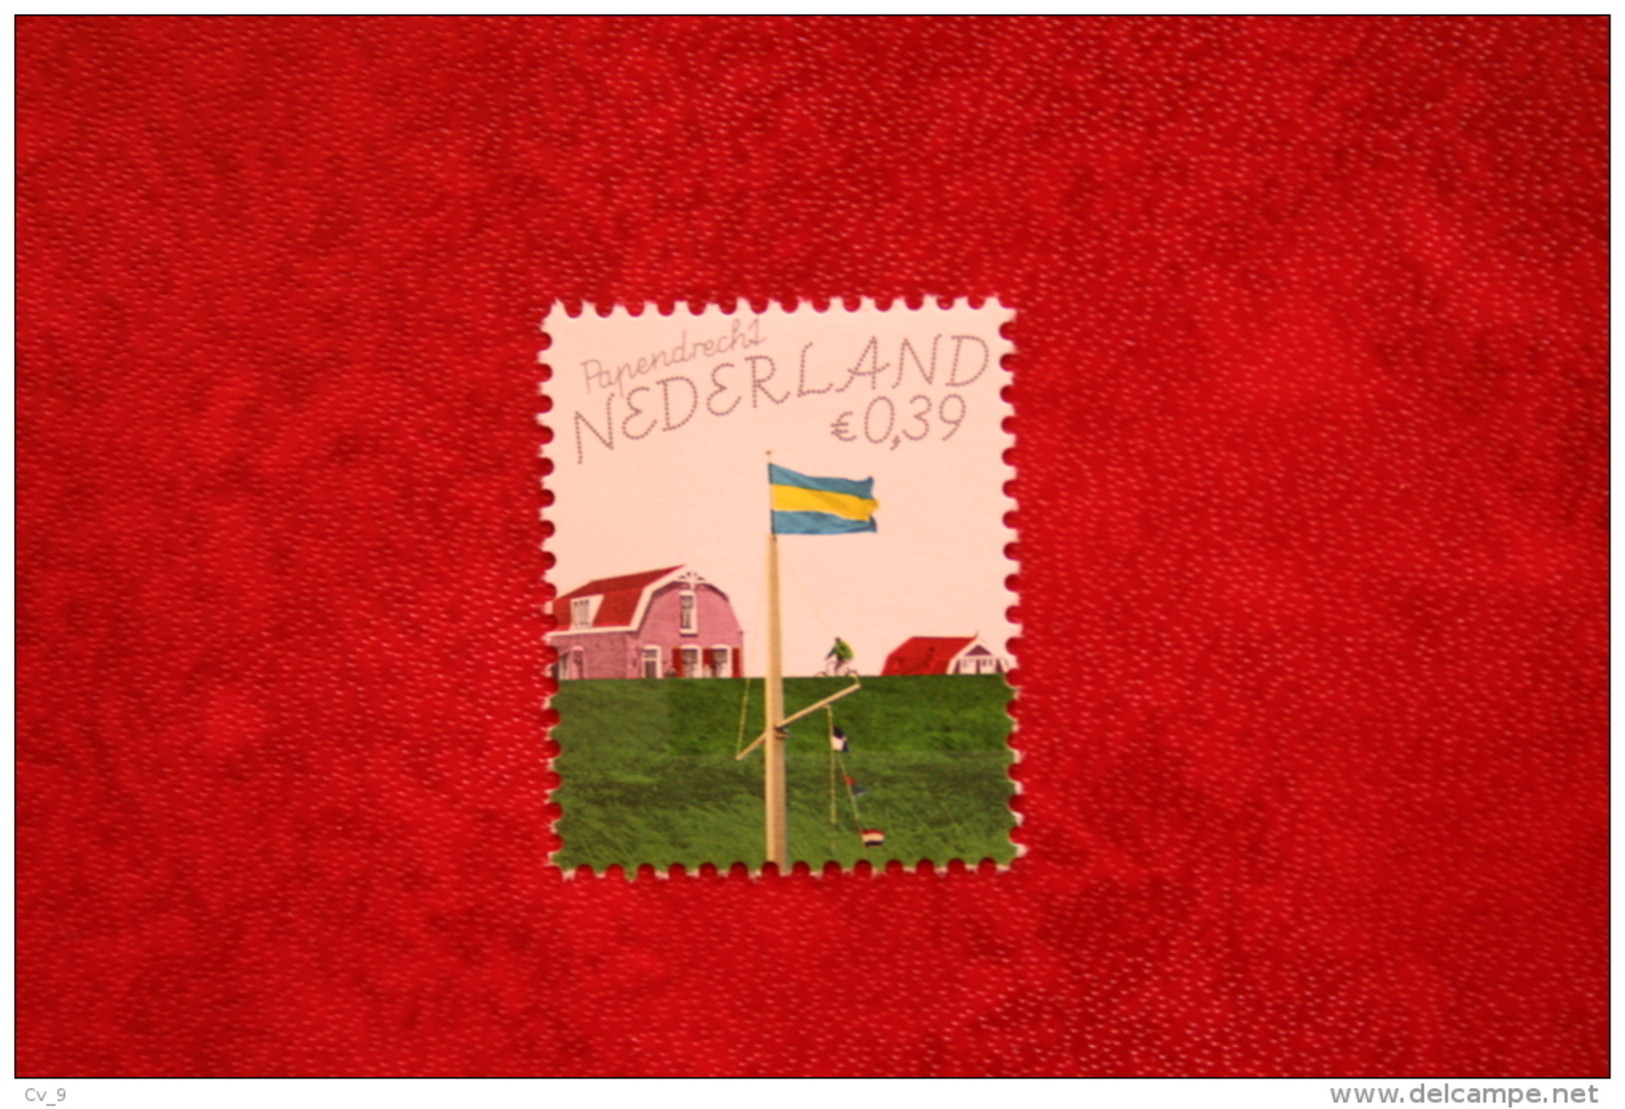 Mooi Nederland Papendrecht ; NVPH 2363 (Mi 2337) ; 2005 POSTFRIS / MNH ** NEDERLAND / NIEDERLANDE / NETHERLANDS - Ungebraucht